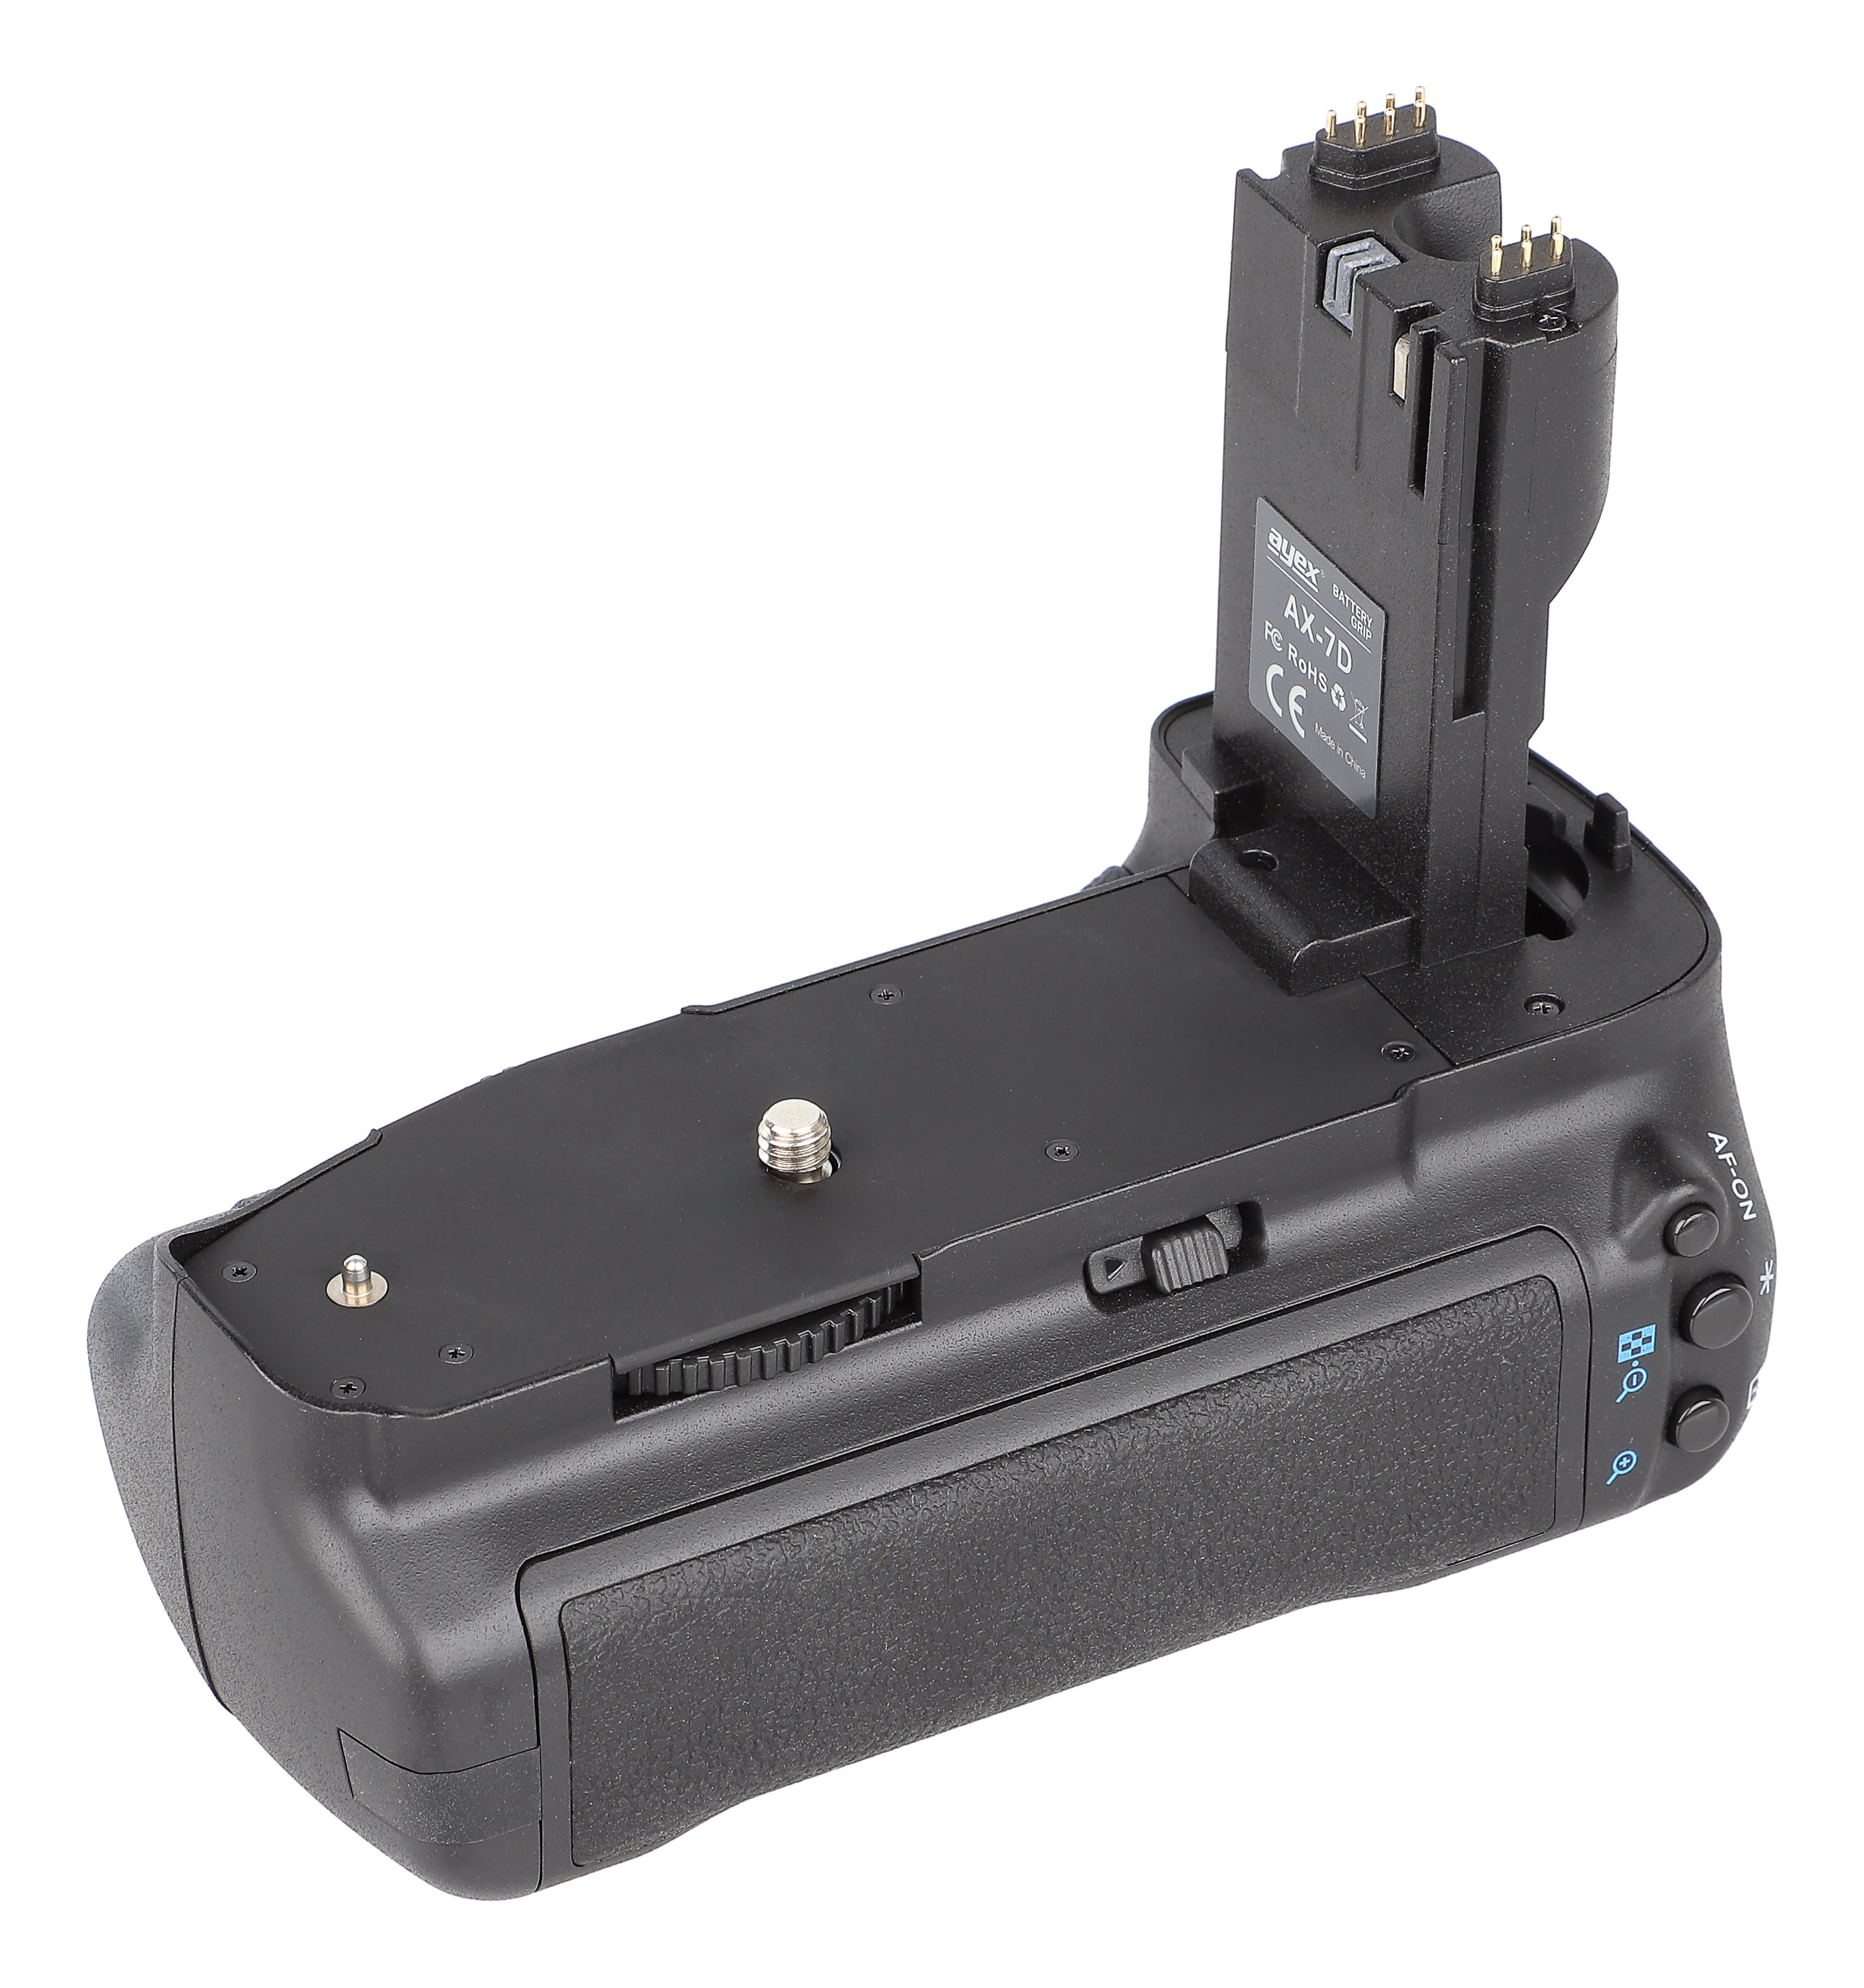 ayex Batteriegriff für Canon EOS 7D wie BG-E7 mit Hochformatauslöser und vielen Funktionen